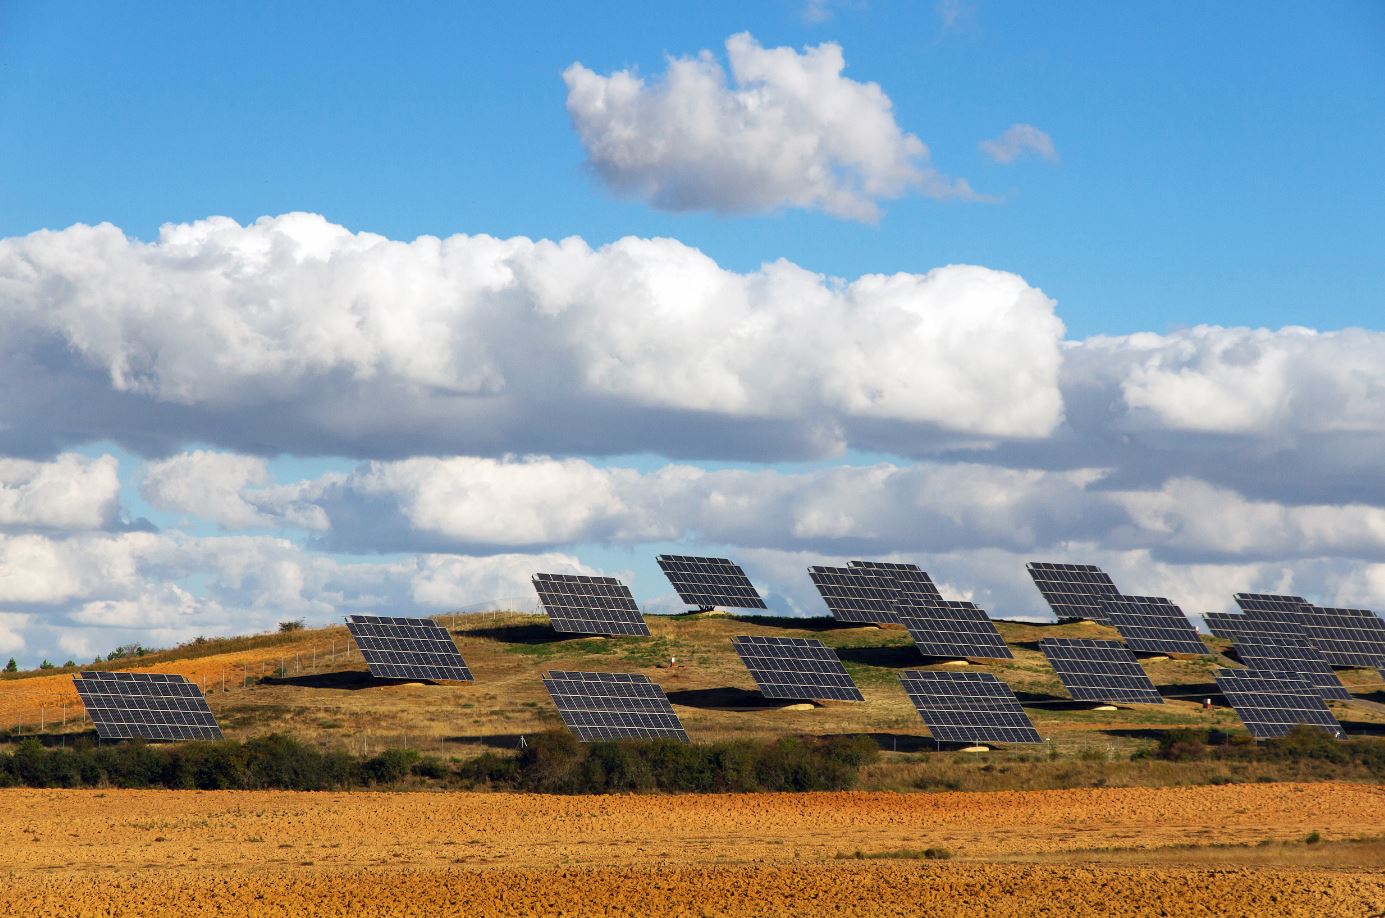 Generadores solares: Conoce más sobre ellos